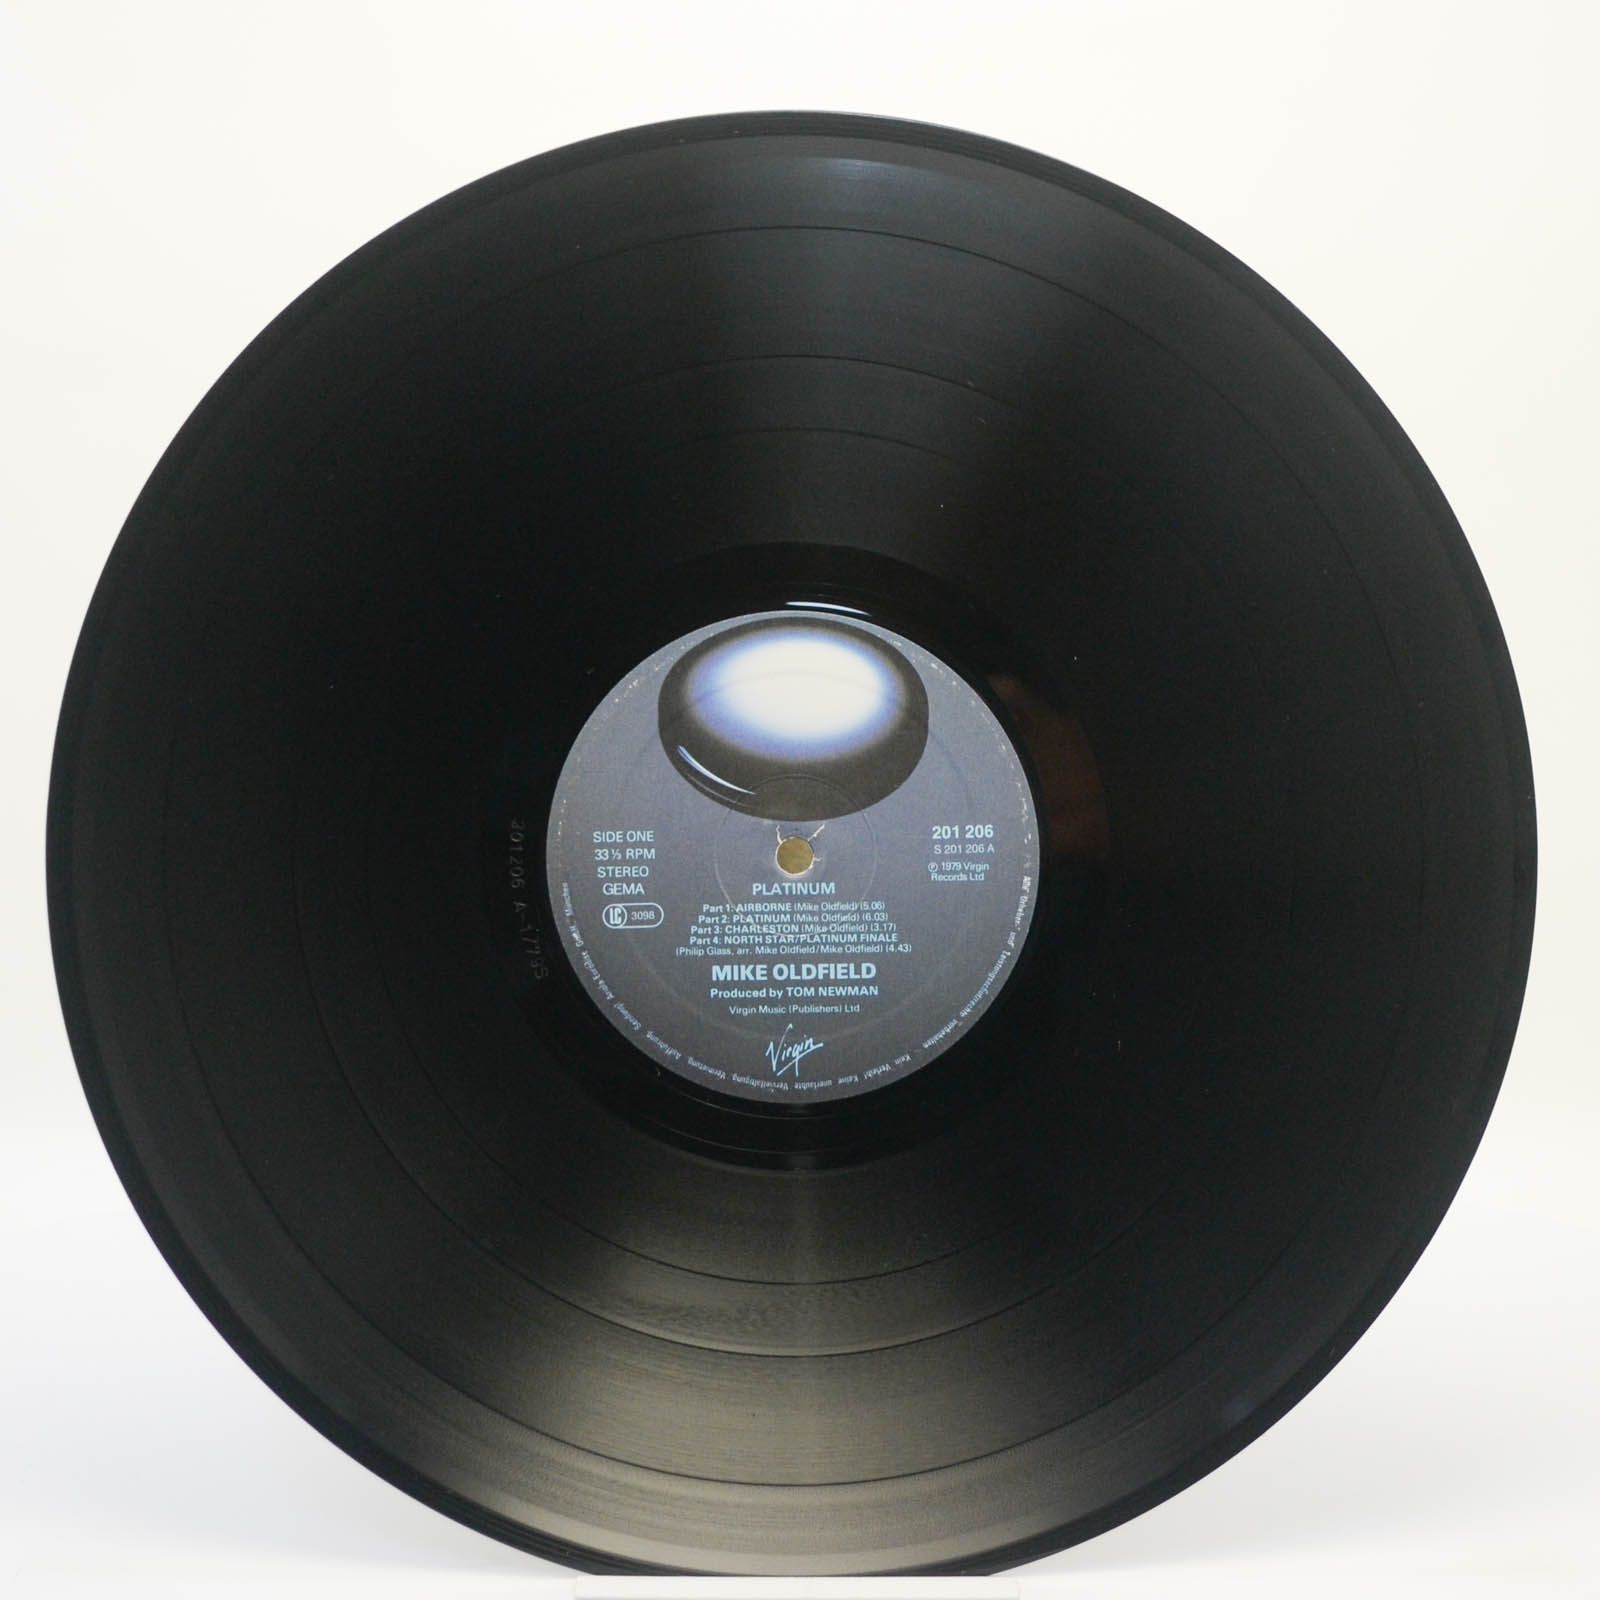 Mike Oldfield — Platinum, 1979